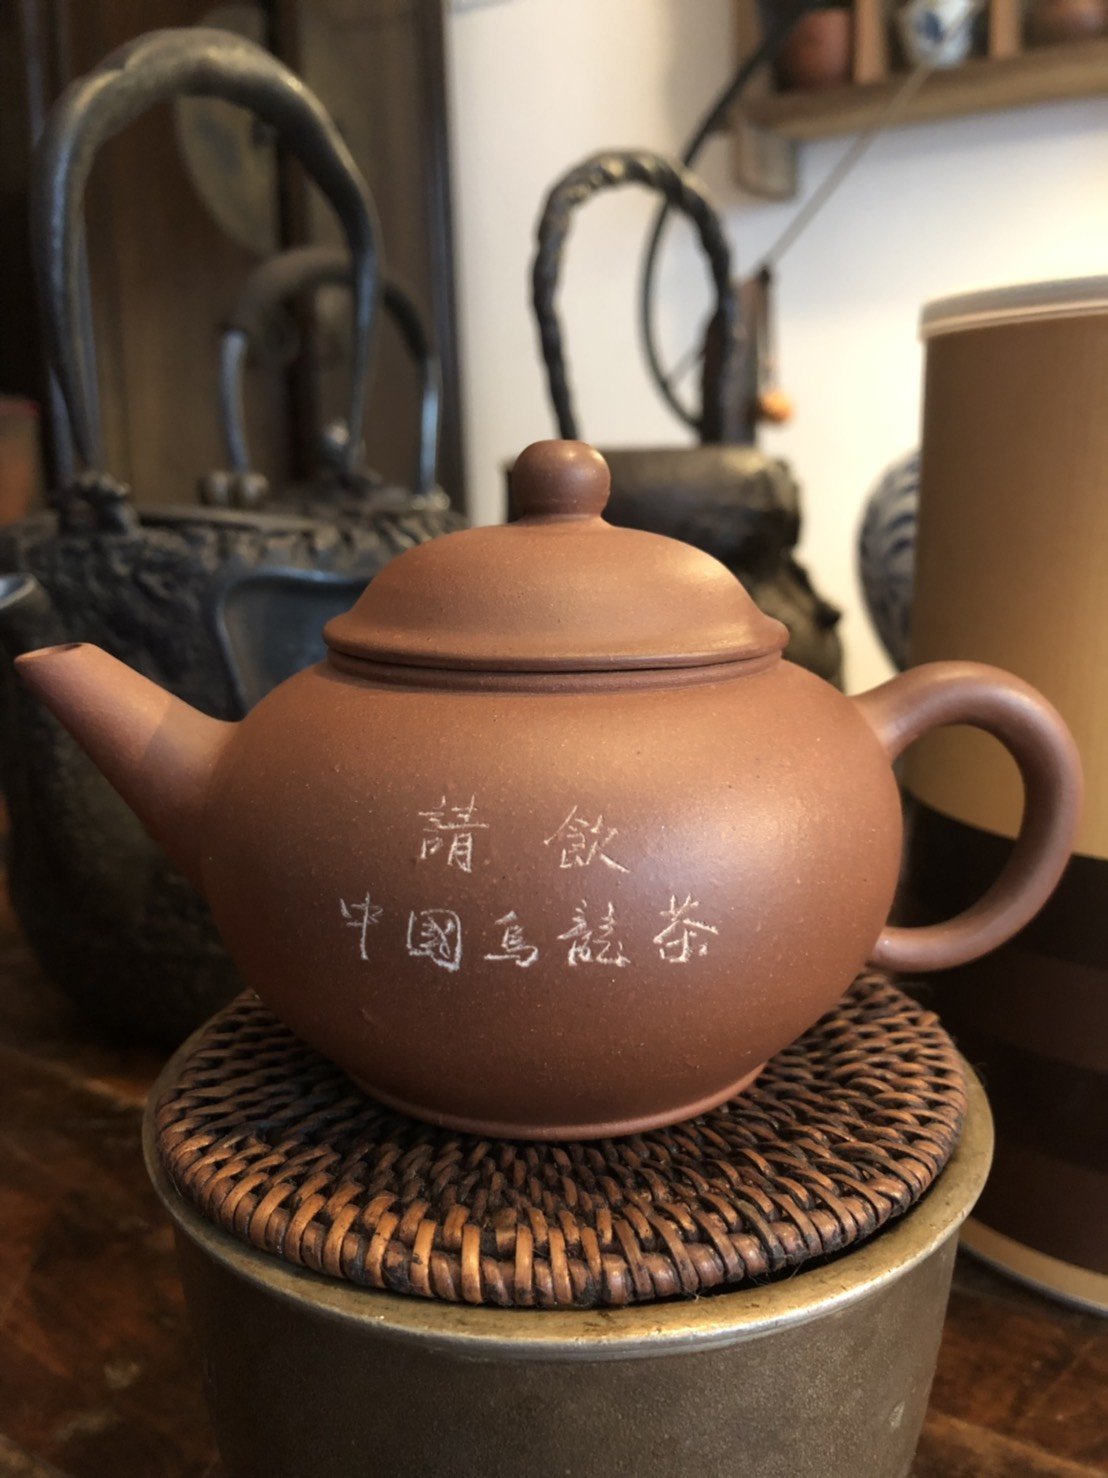 早期宜興紫砂8杯標準壺底款22字請飲中國烏龍茶可以堂普洱茶苑| Yahoo 